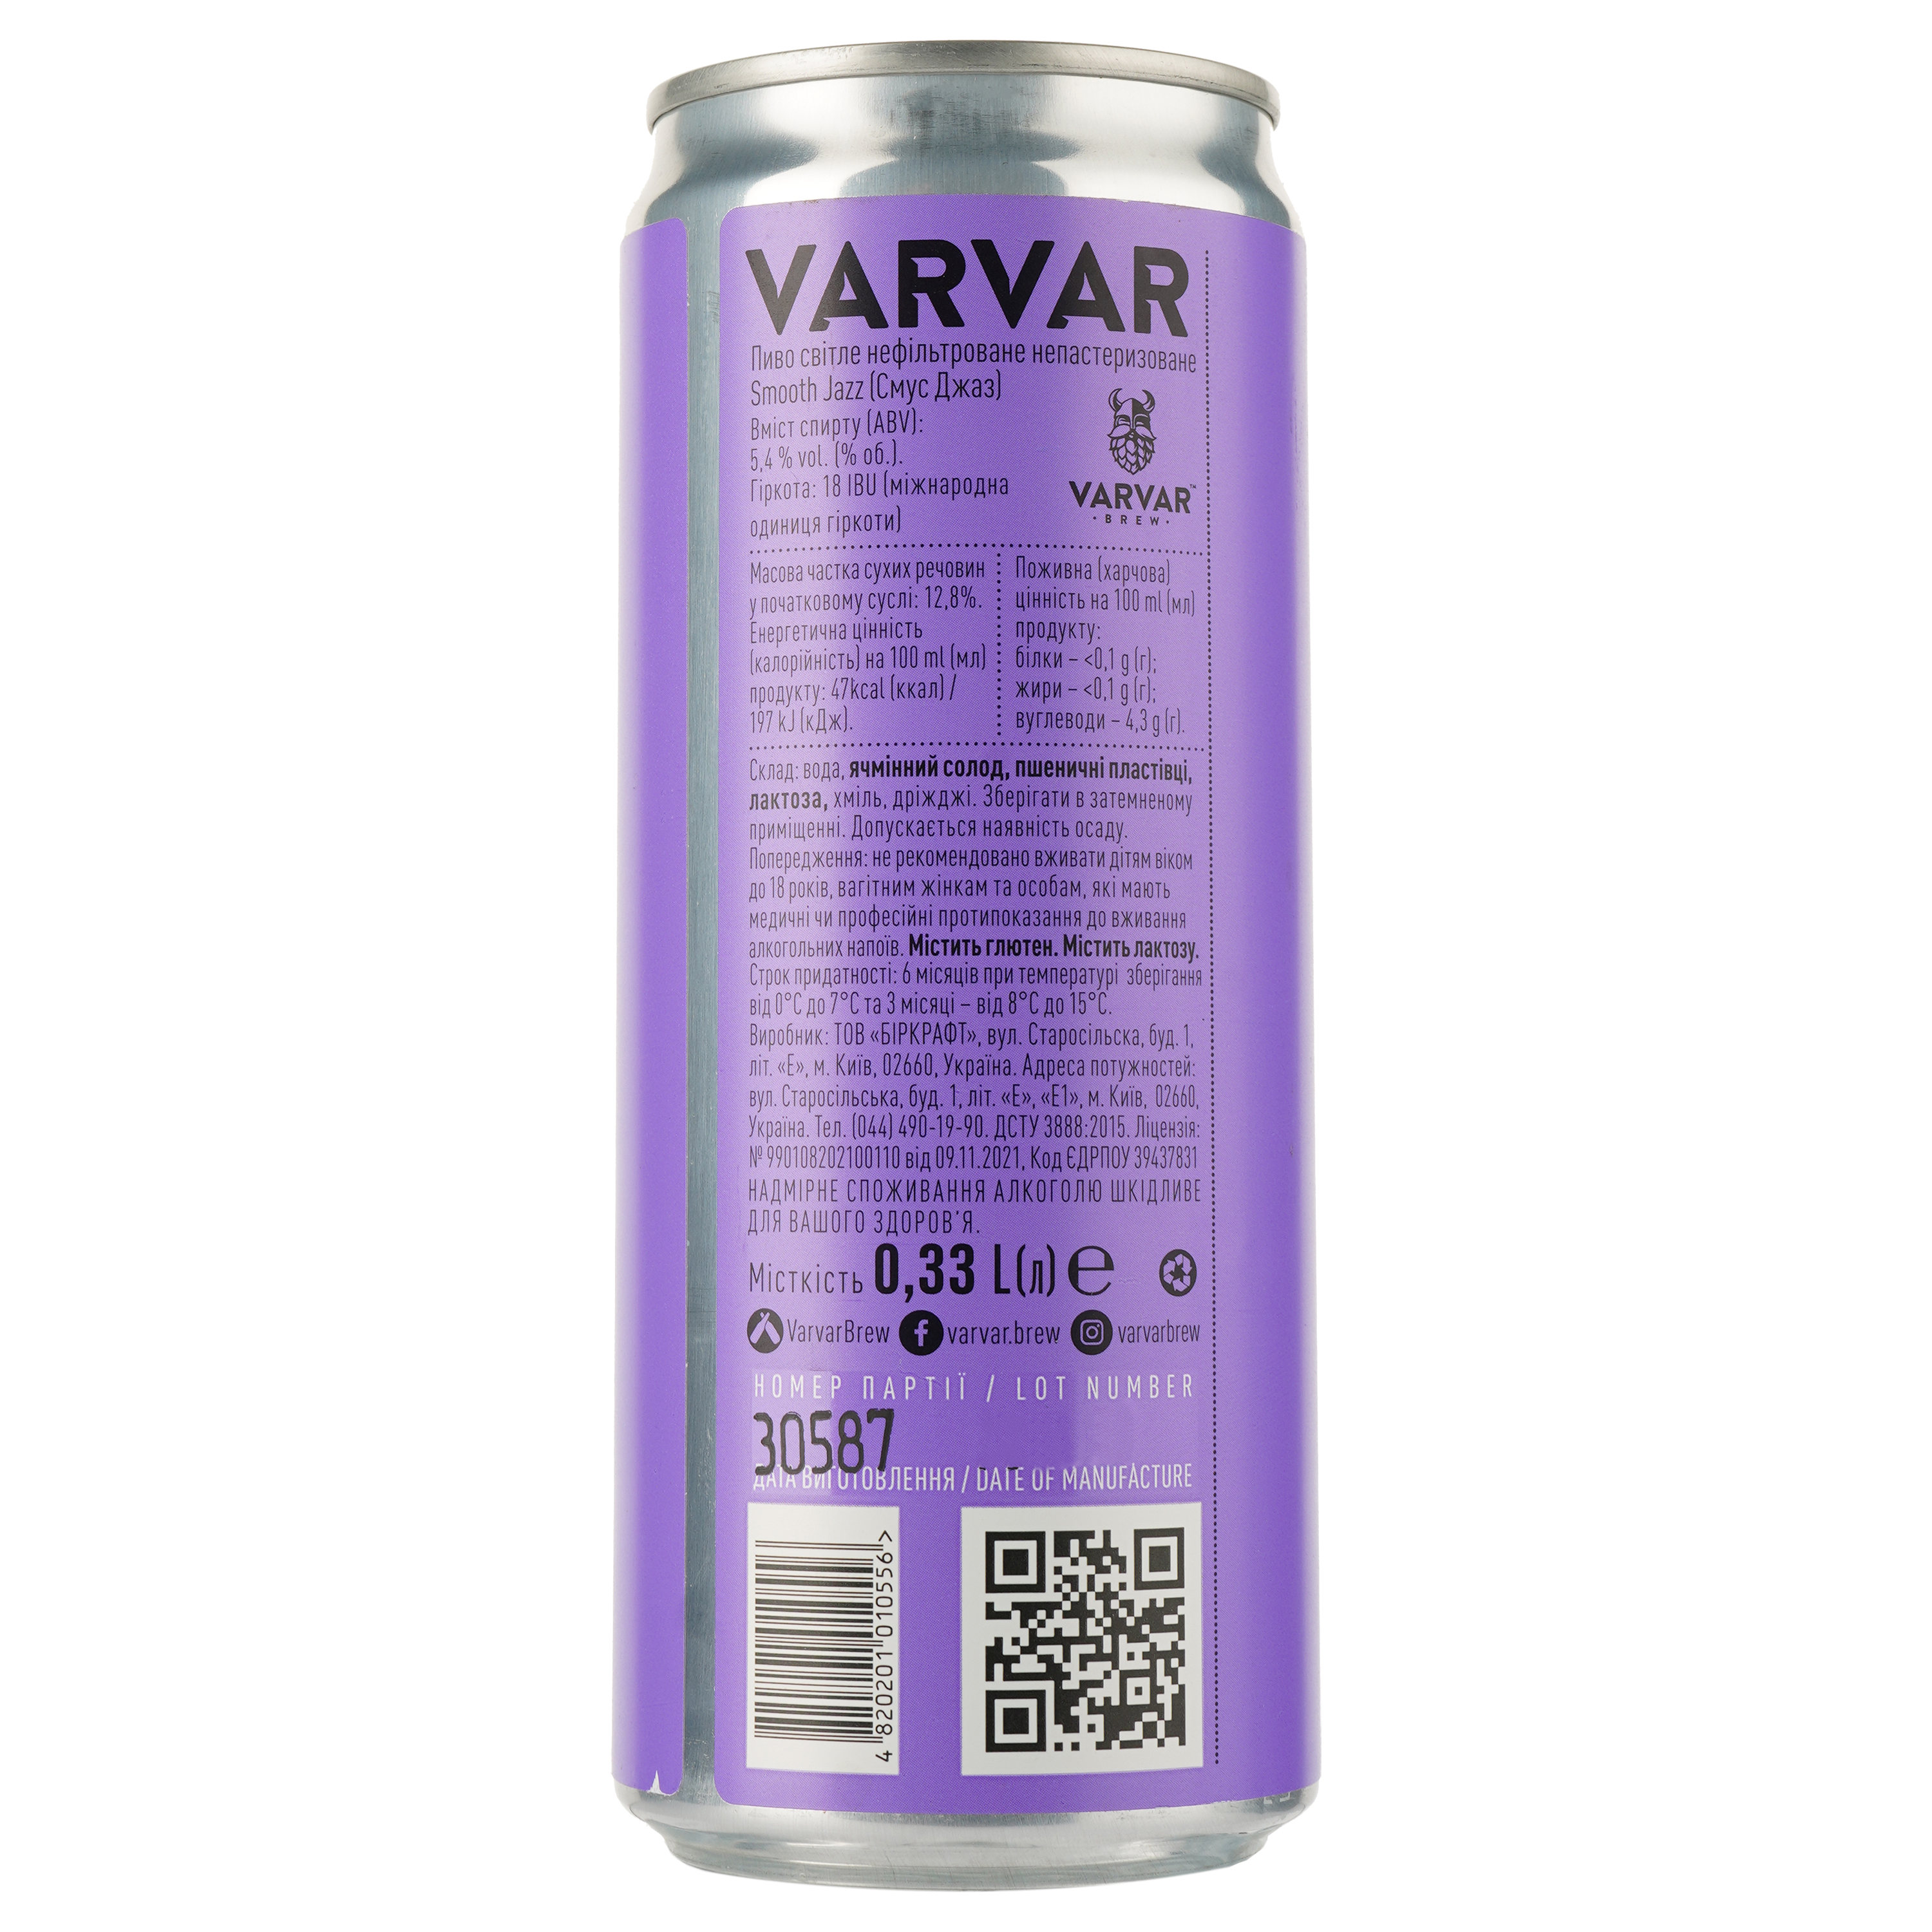 Пиво Varvar Smooth Jazz Pale Ale, світле, нефільтроване, 5,4%, з/б, 0,33 л (823948) - фото 2